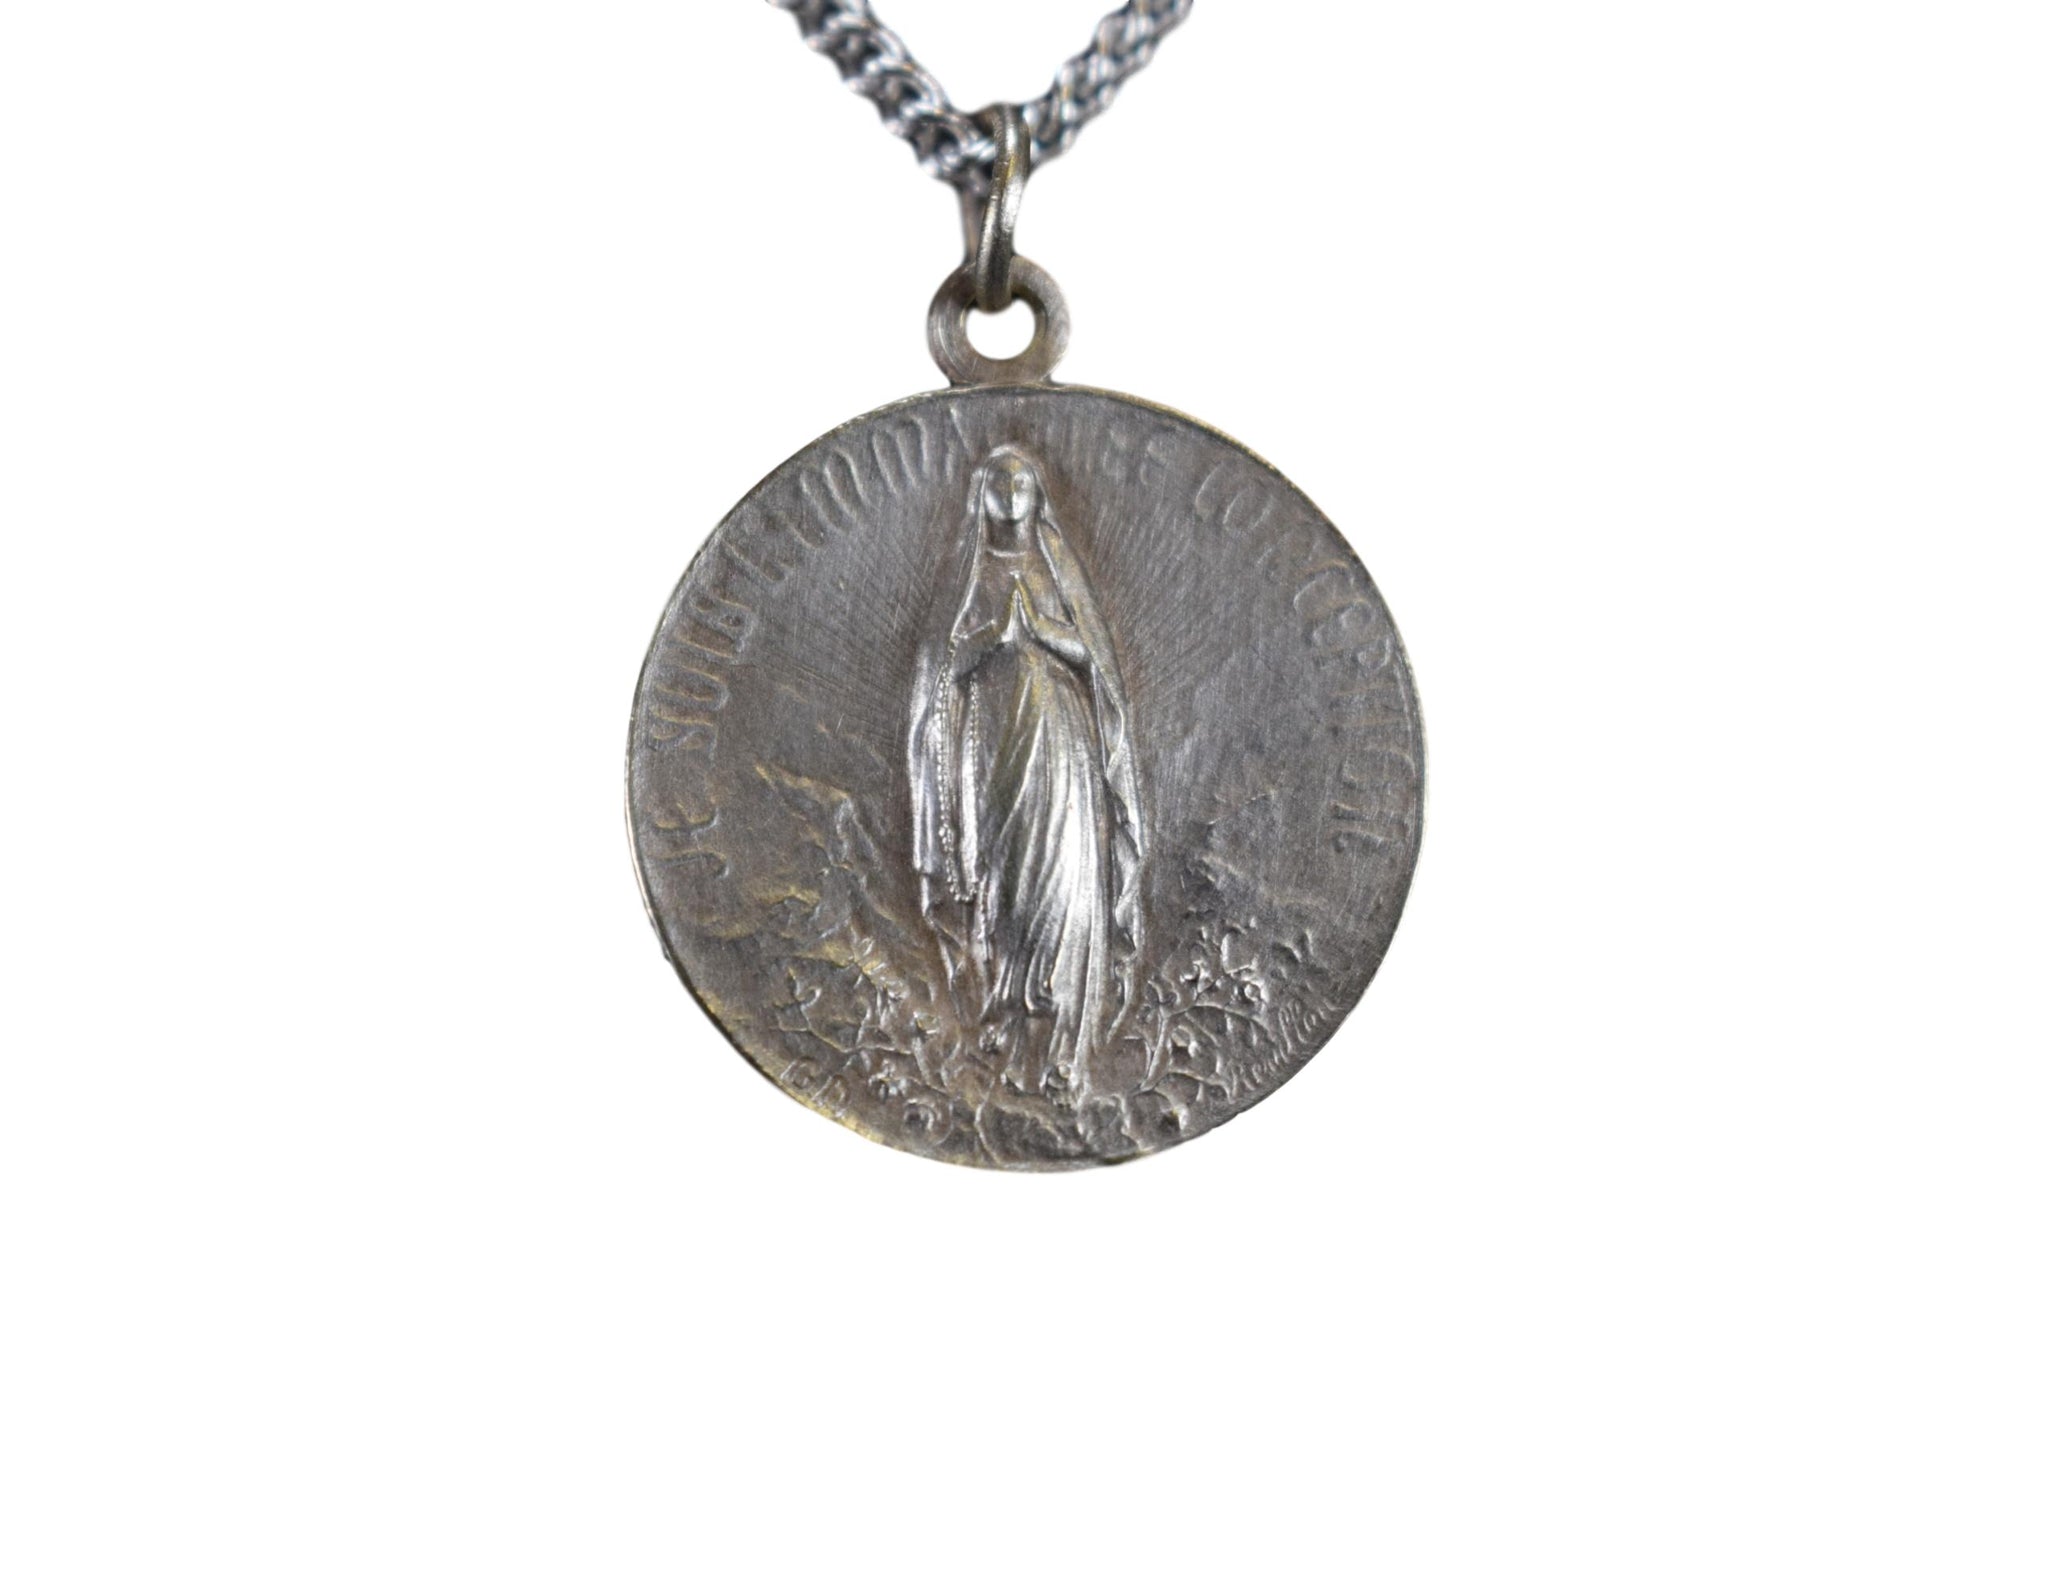 Lourdes Medal by Revillon - Charmantiques